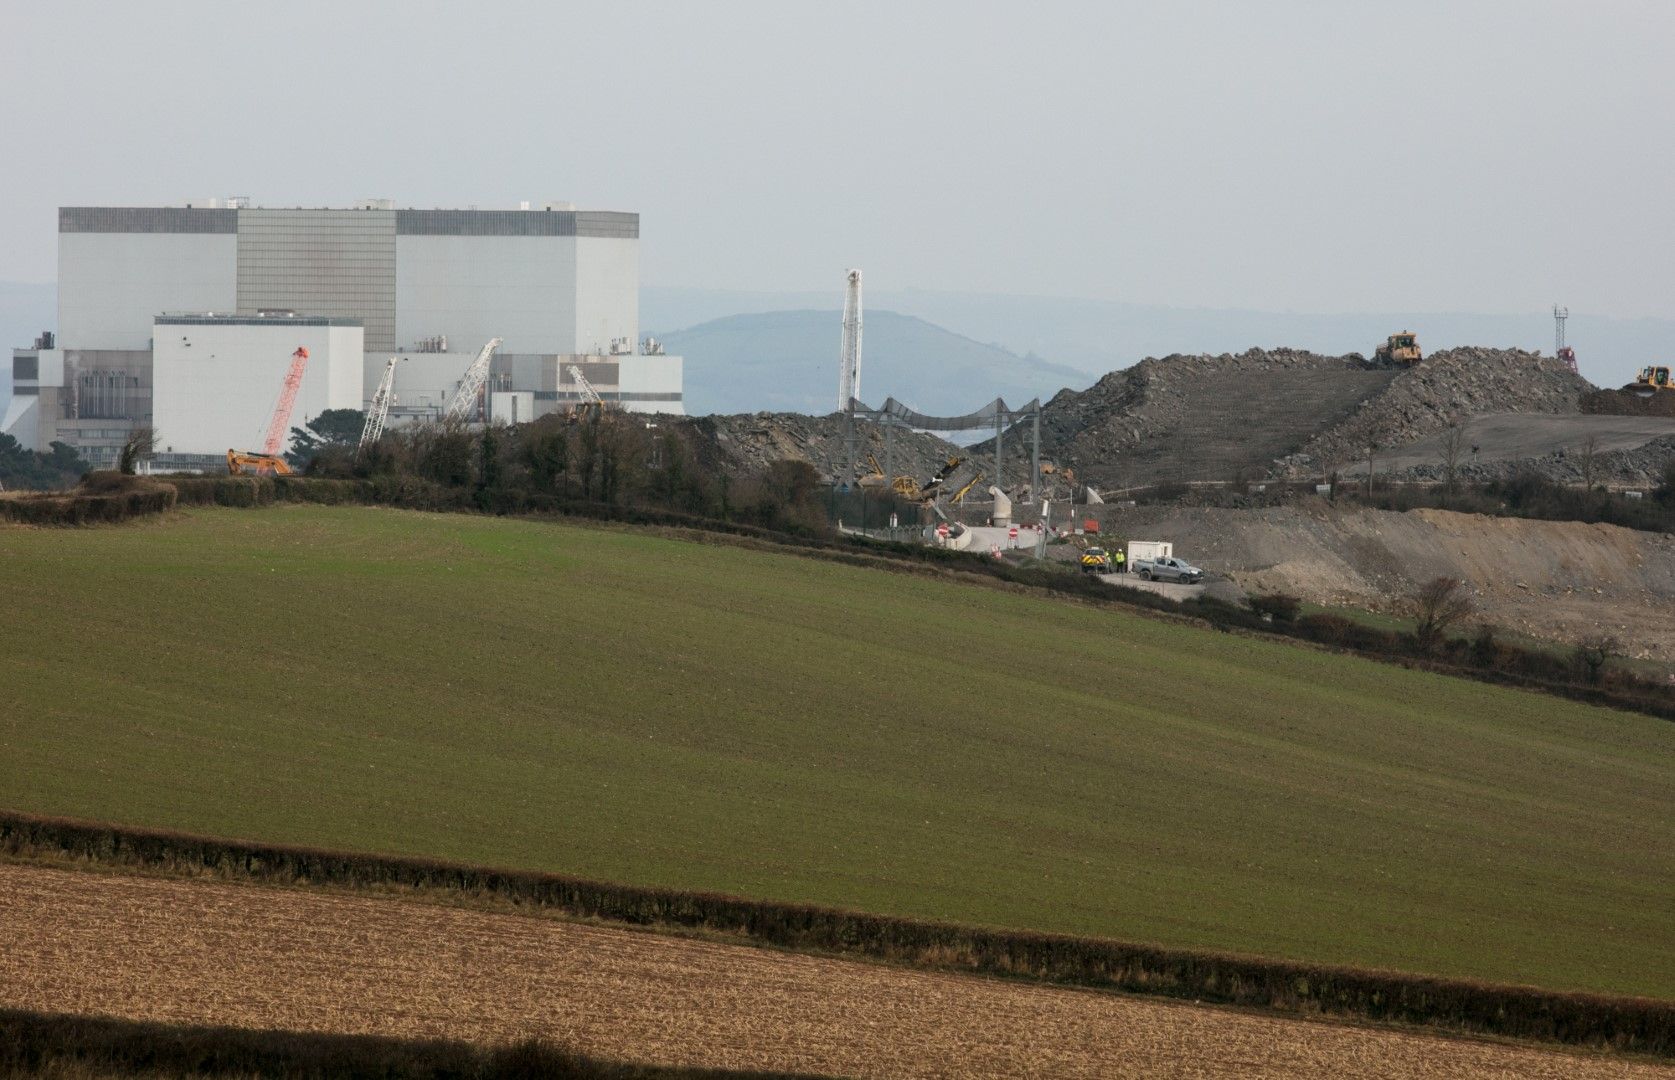 Строителството продължава. Предвижда се производството на електричество от Блок 1 на EDF Energy Hinkley Point Power Station да започне през юни 2026 година вместо в края на 2025 година, както беше предвидено първоначално